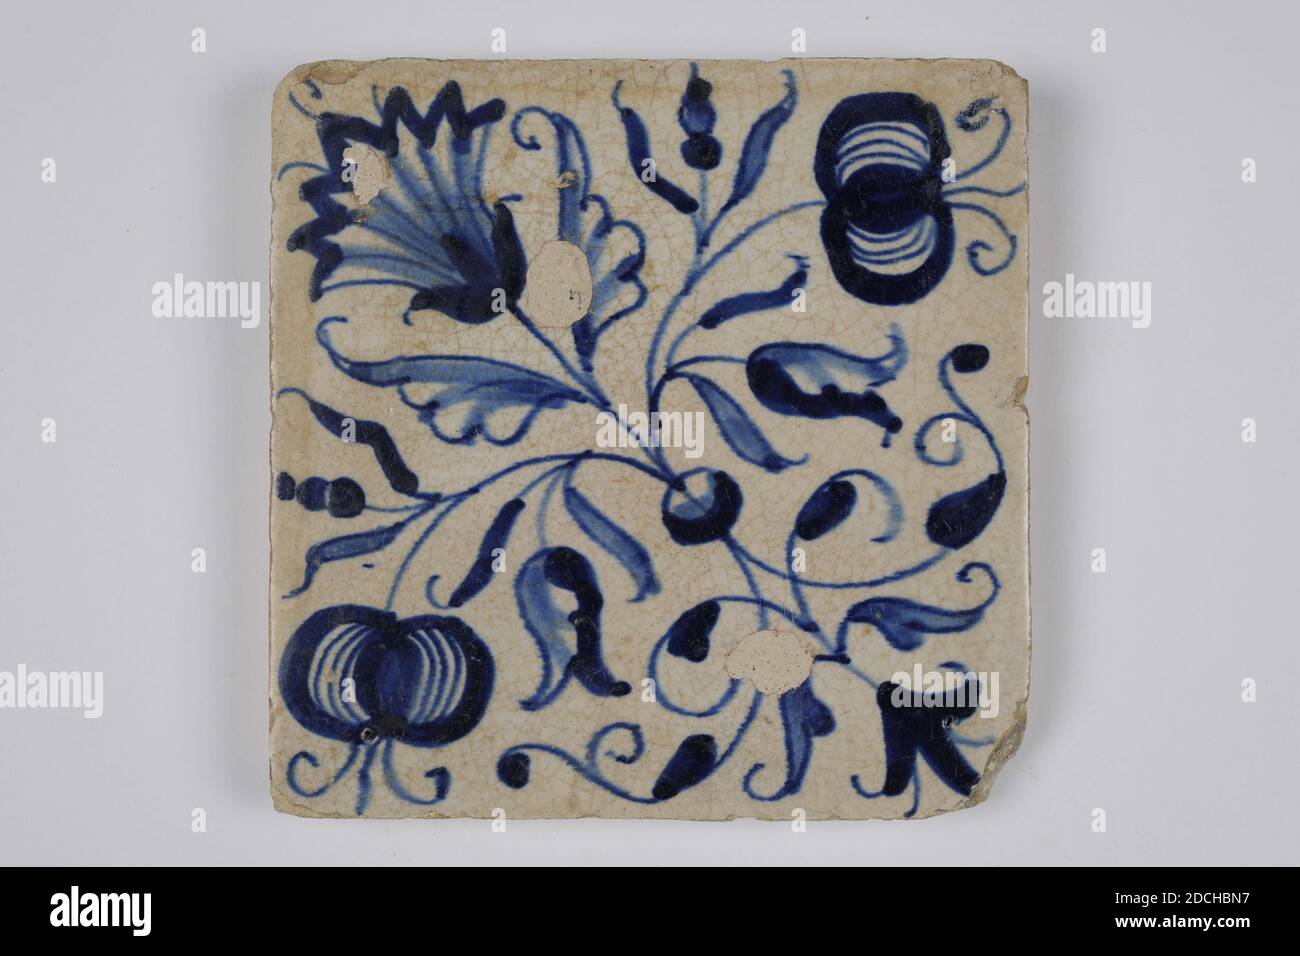 Wandfliese, Anonymous, erste Hälfte des 17. Jahrhunderts, Zinn-Glasur, Steingut, Allgemein: 13.2 x 13.1 x 1,7cm (132 x 131 x 17mm), Blume, Obst, Nordniederländisch, Ornamentfliese aus Steingut mit Zinn-Glasur bedeckt und blau bemalt. Stilisierte Blumen und Früchte sind auf der Fliese abgebildet. Die Fliese hat kein Eckmotiv, 1985 Stockfoto